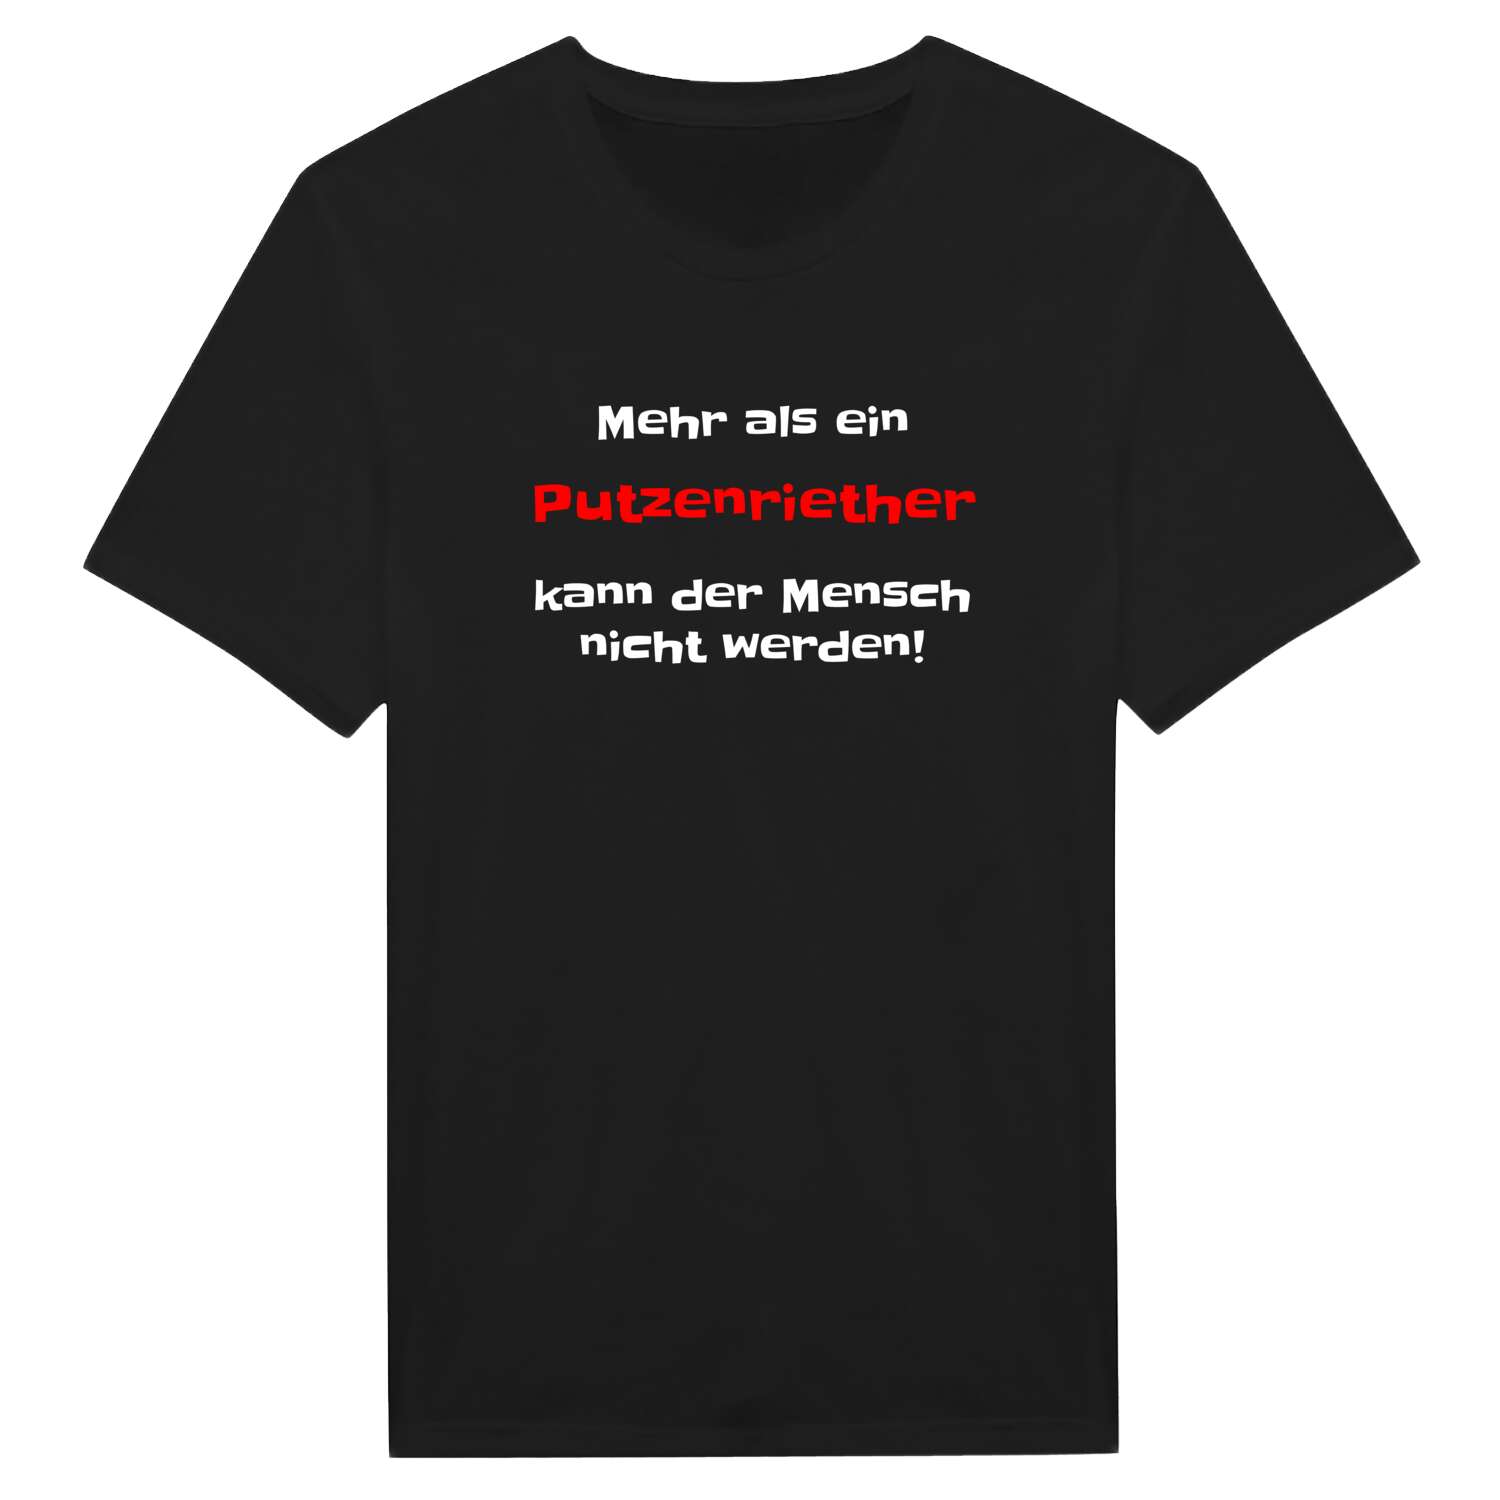 Putzenrieth T-Shirt »Mehr als ein«